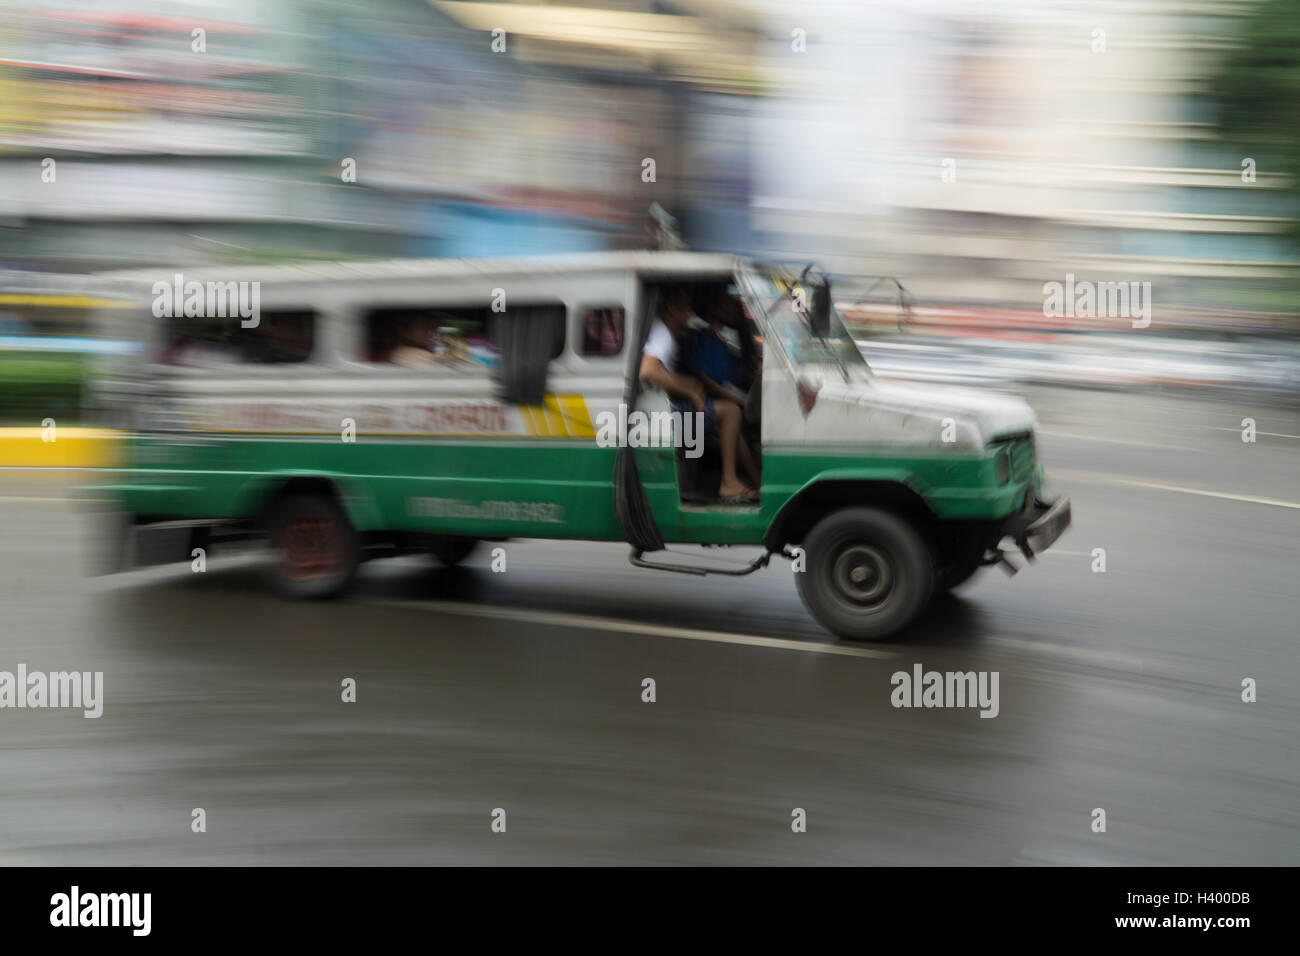 Bassa velocità dell'otturatore della fotocamera esagerando il movimento di un multicab di veicoli per il trasporto pubblico a Cebu City, nelle Filippine. Foto Stock